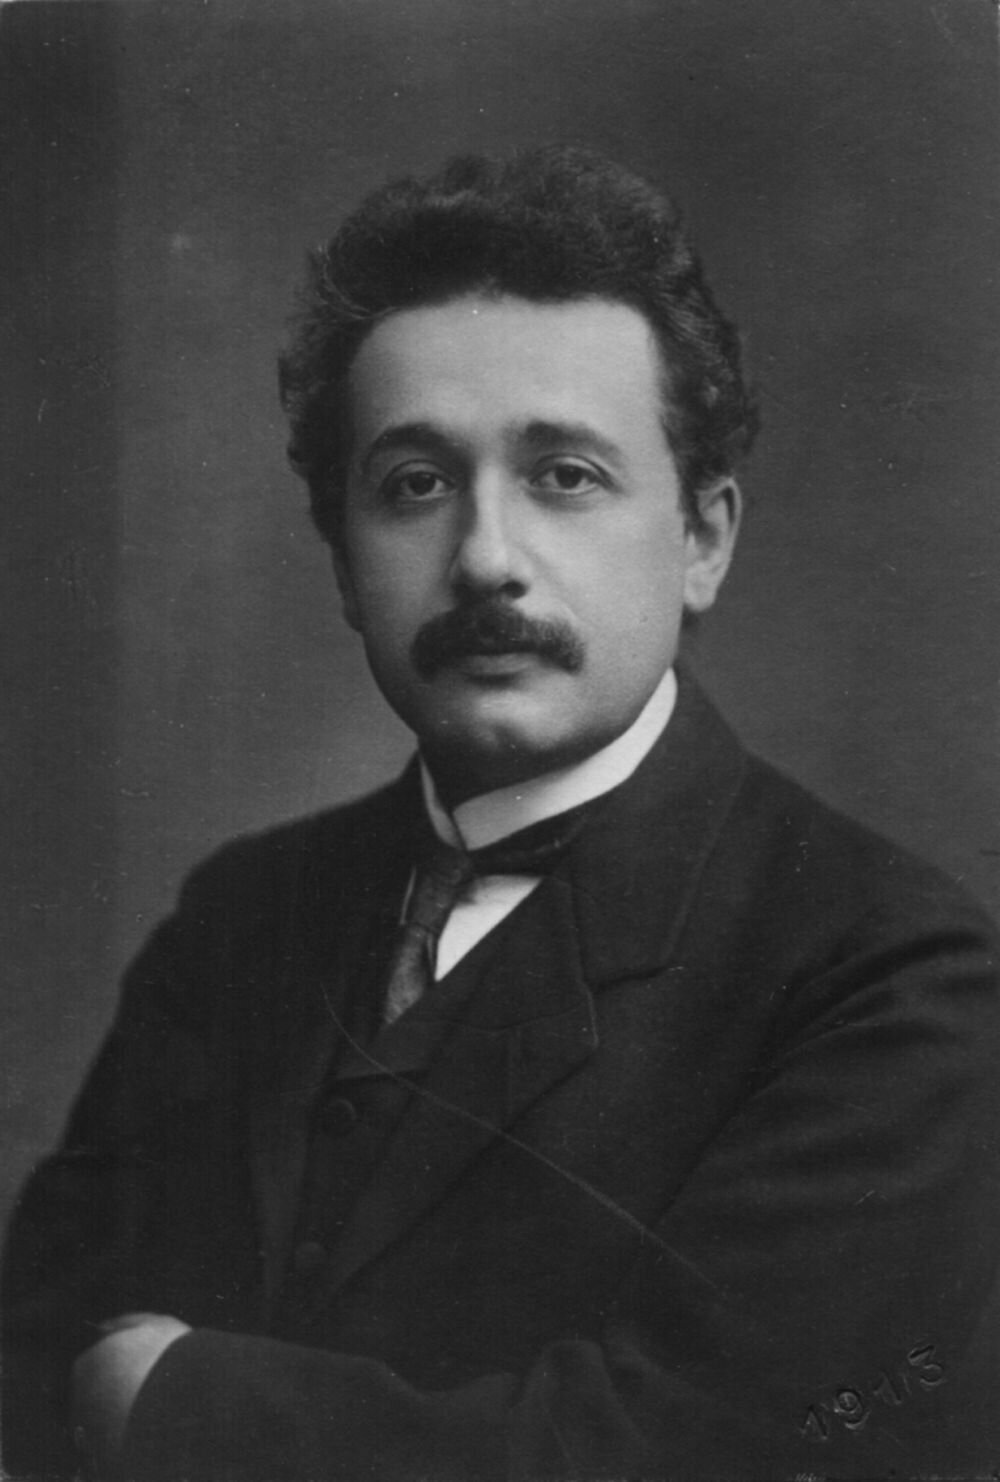 Albert Einstein around 1905 